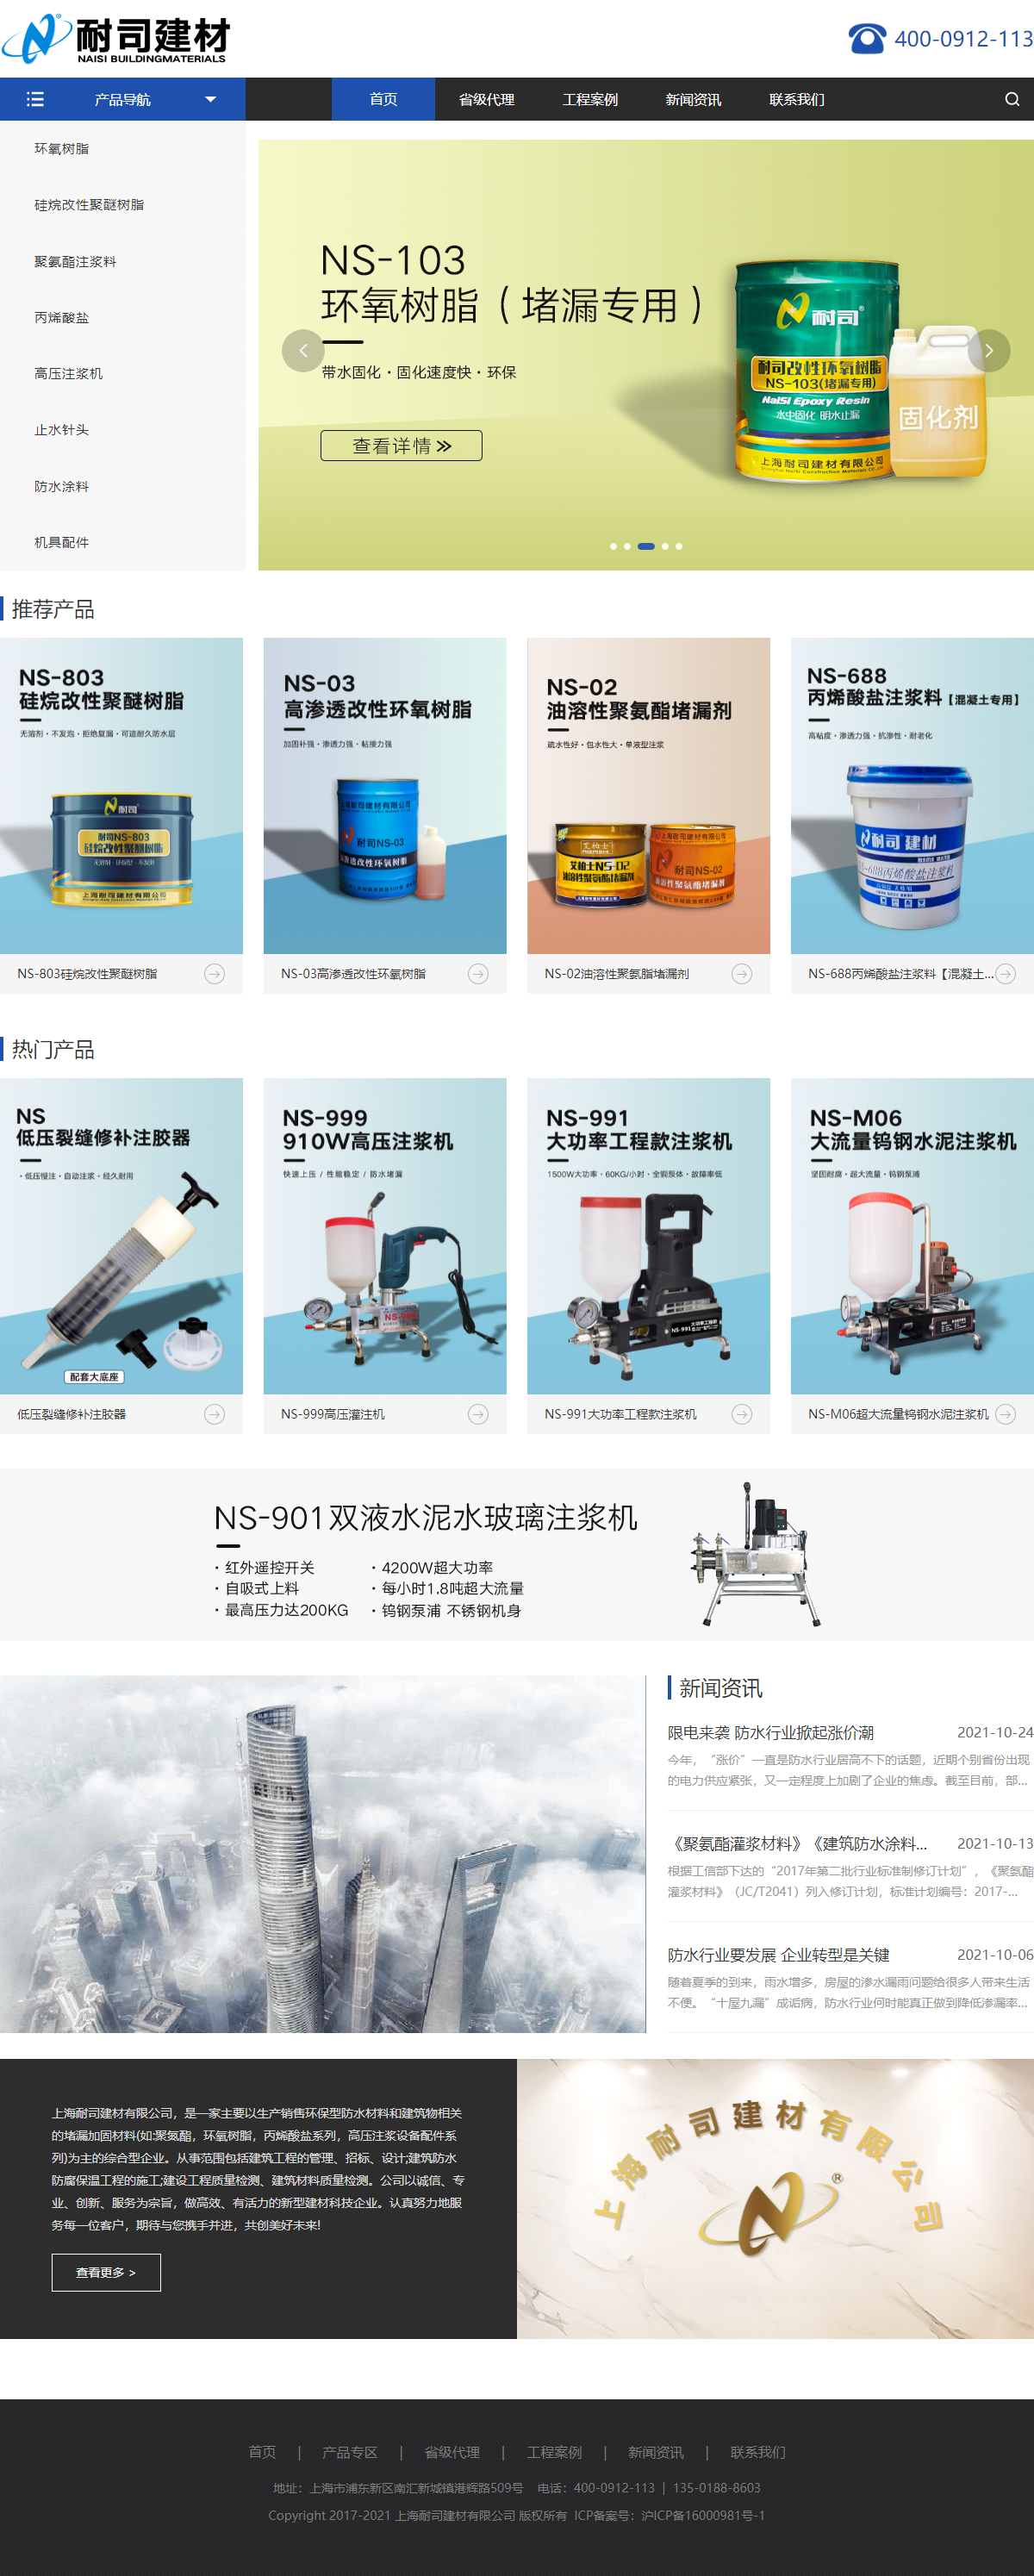 上海耐司建材有限公司网站案例